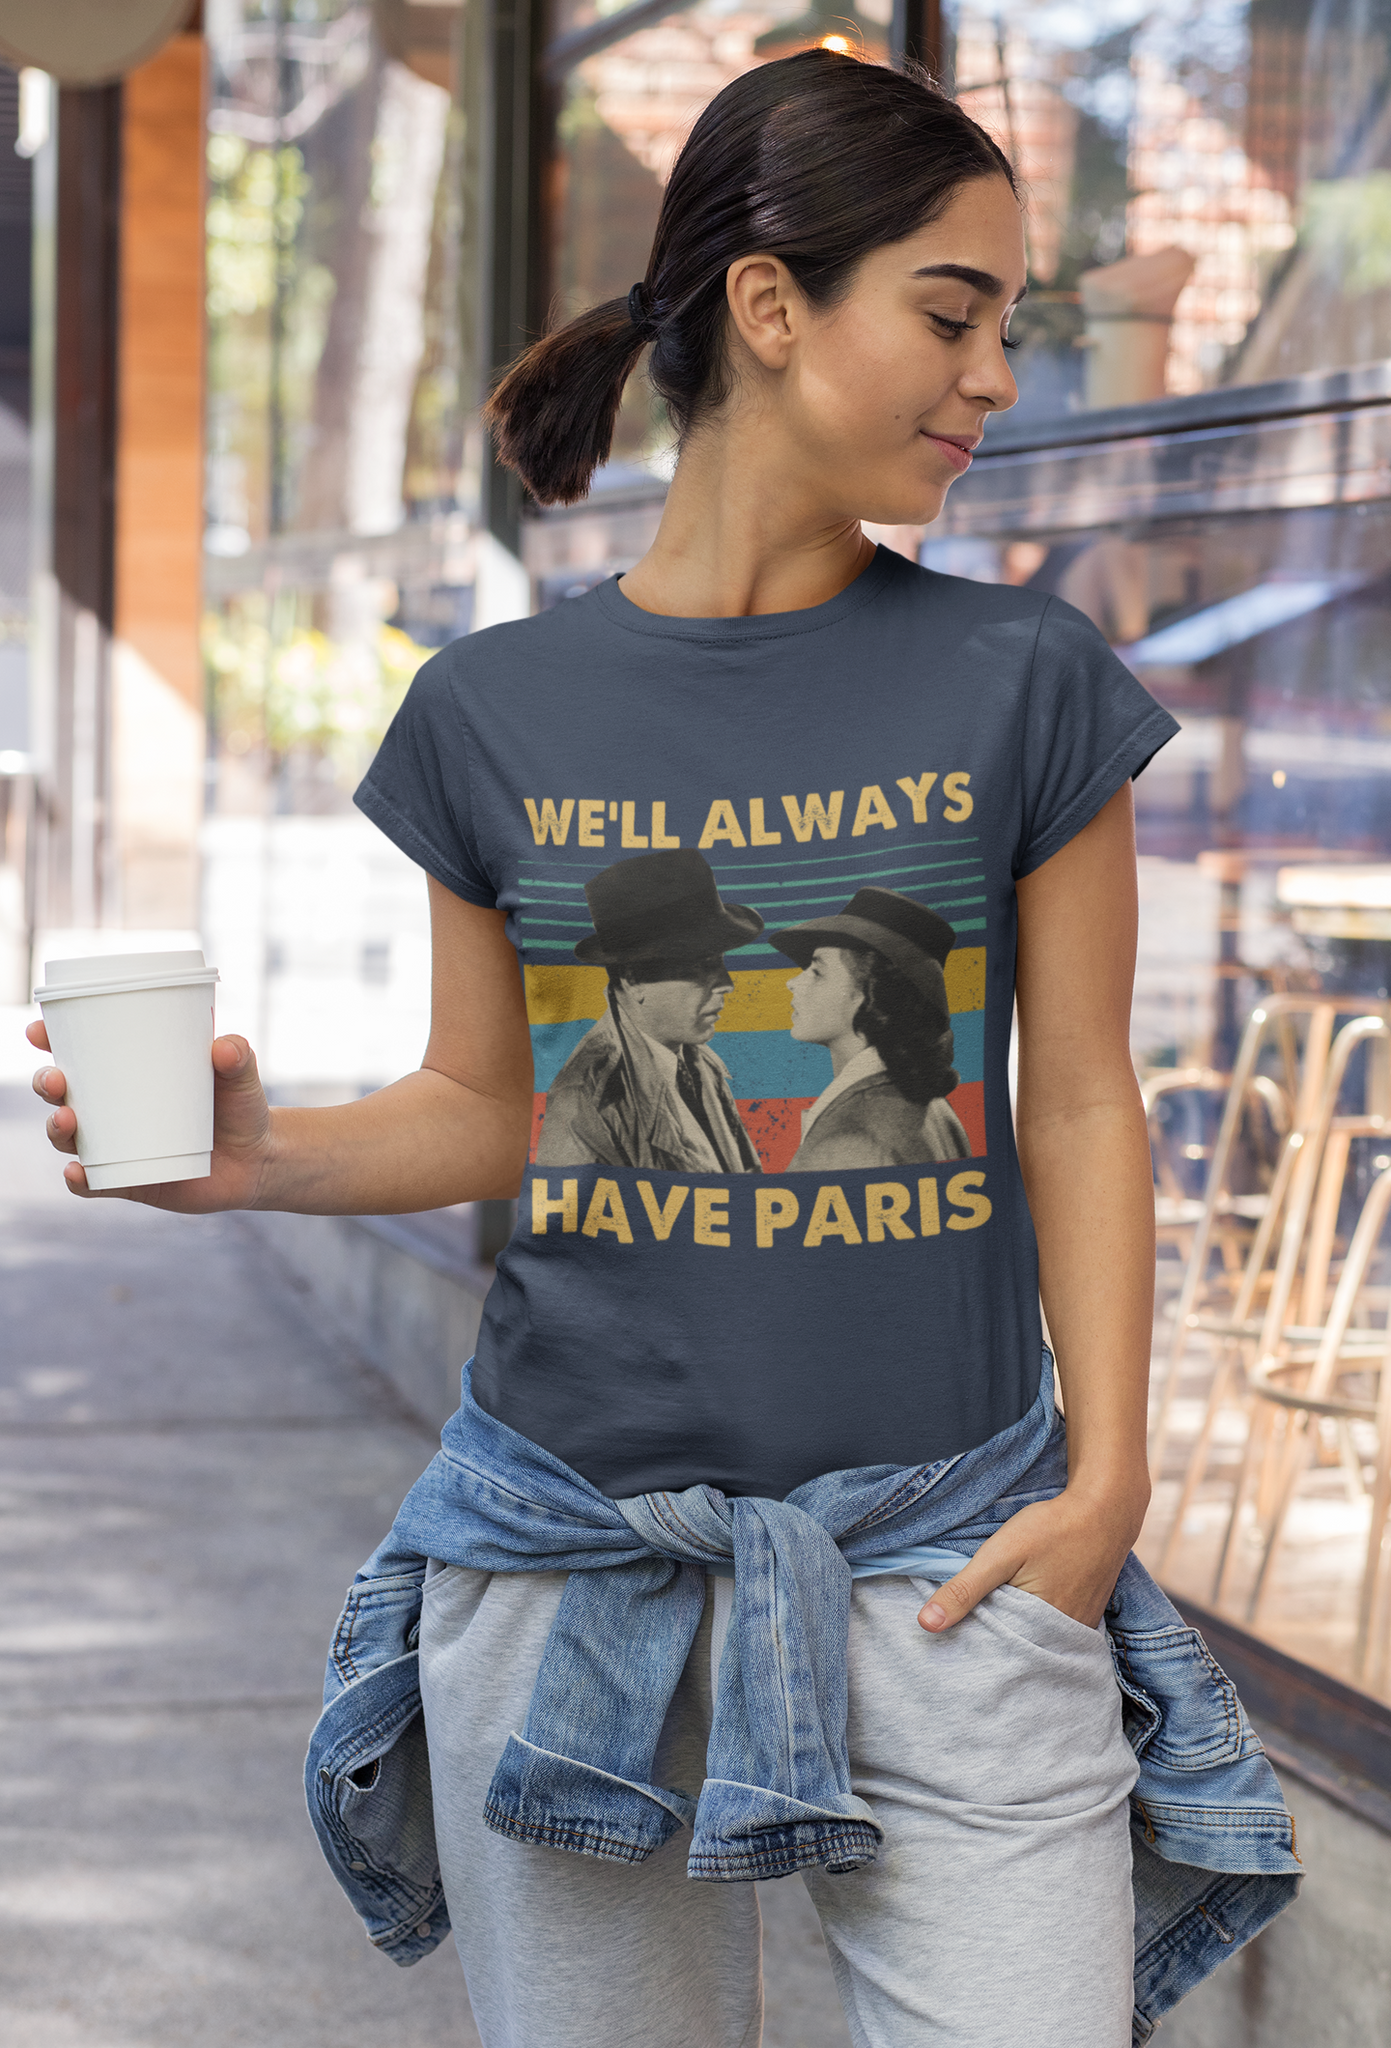 Casablanca Vintage T Shirt, Well Always Have Paris Tshirt, Rick Blaine Ilsa Lund T Shirt